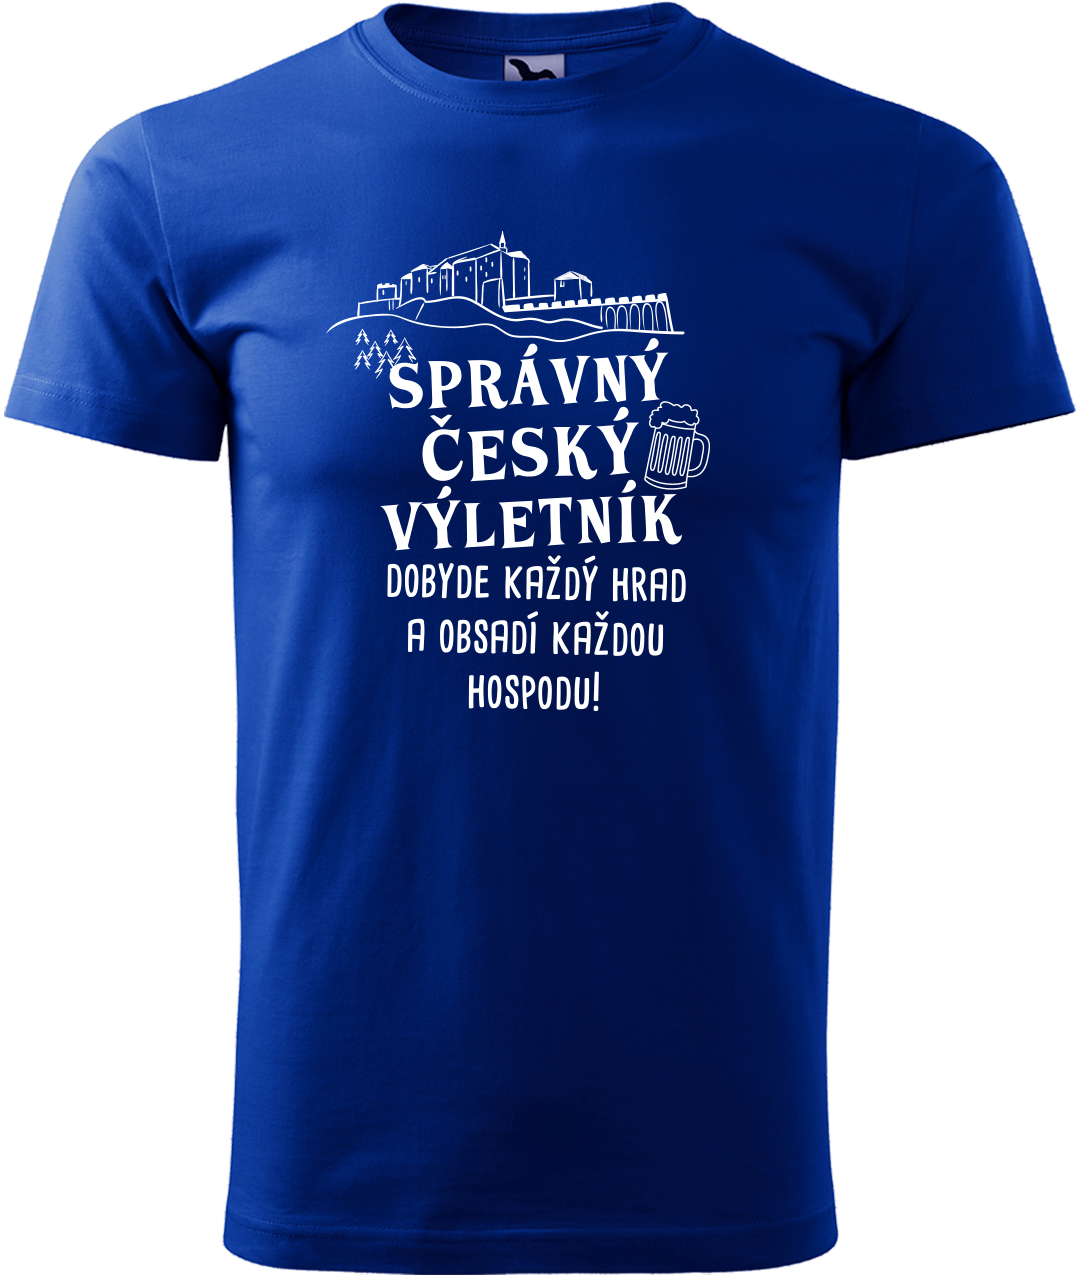 Pánské cestovatelské tričko - Správný český výletník Velikost: L, Barva: Královská modrá (05), Střih: pánský